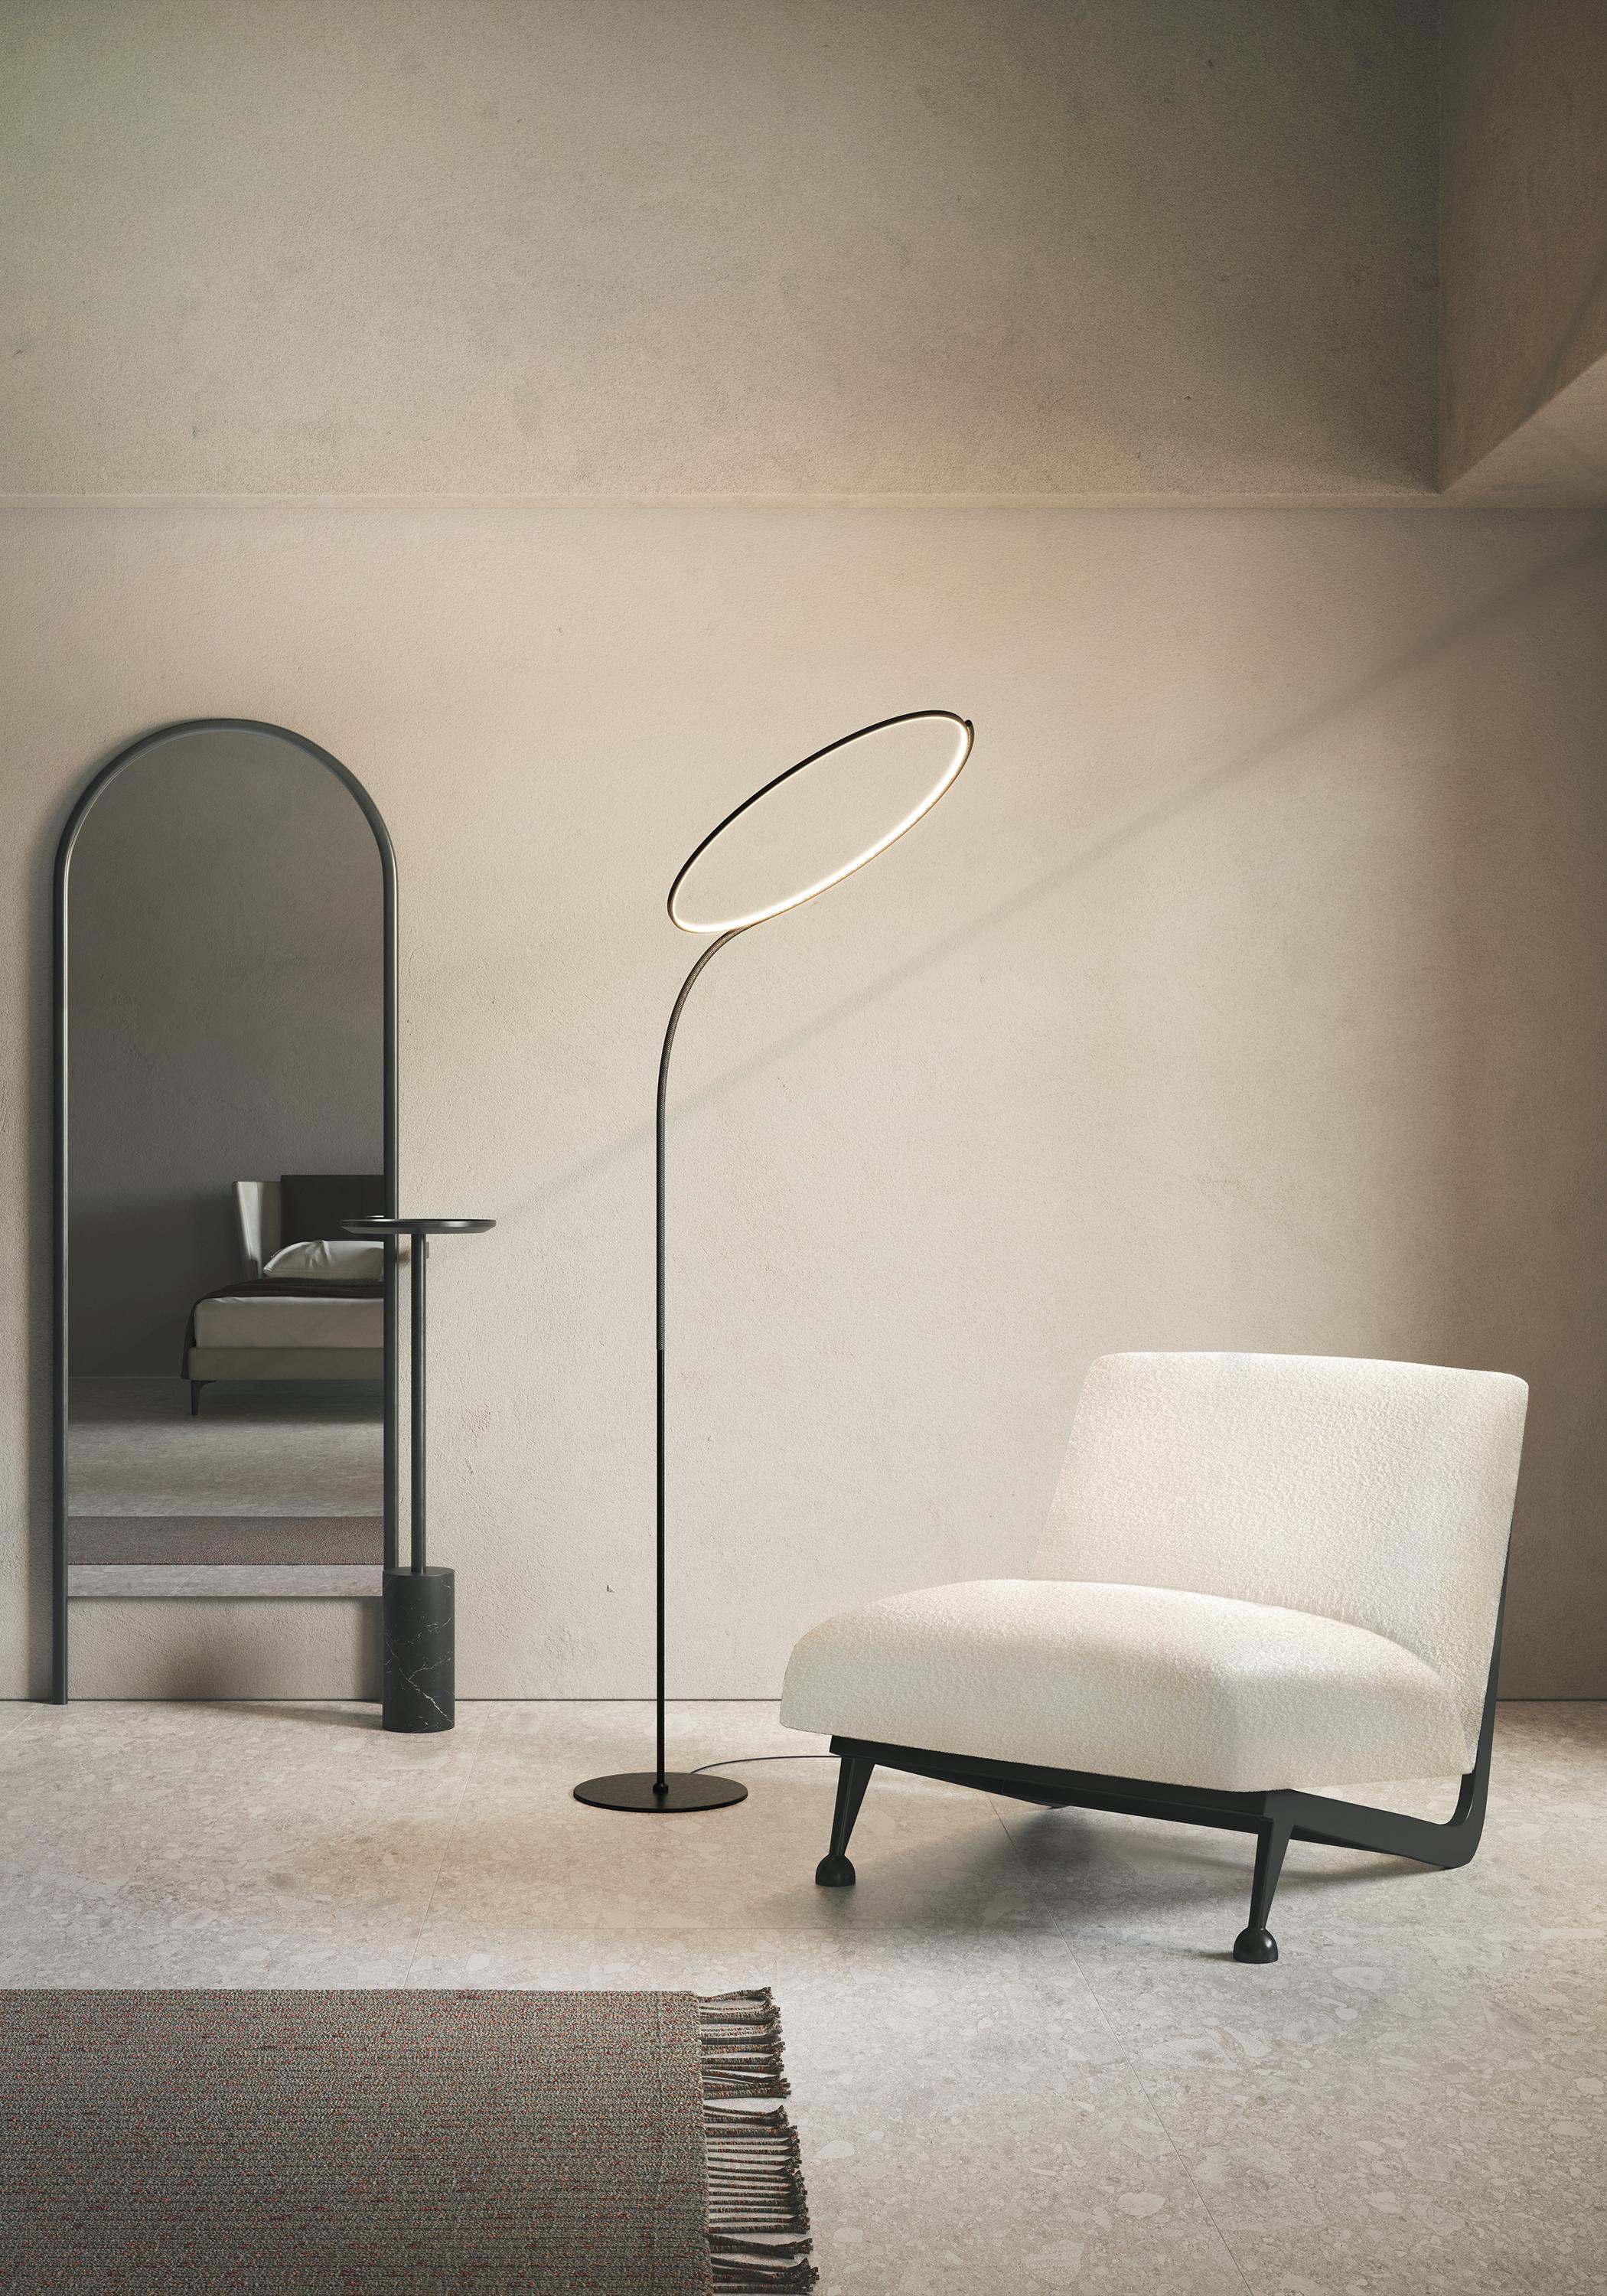 KDLN Contemporary POISE Led Floor Lamp In New Condition For Sale In Trezzano sul Naviglio, Milano Lombardia